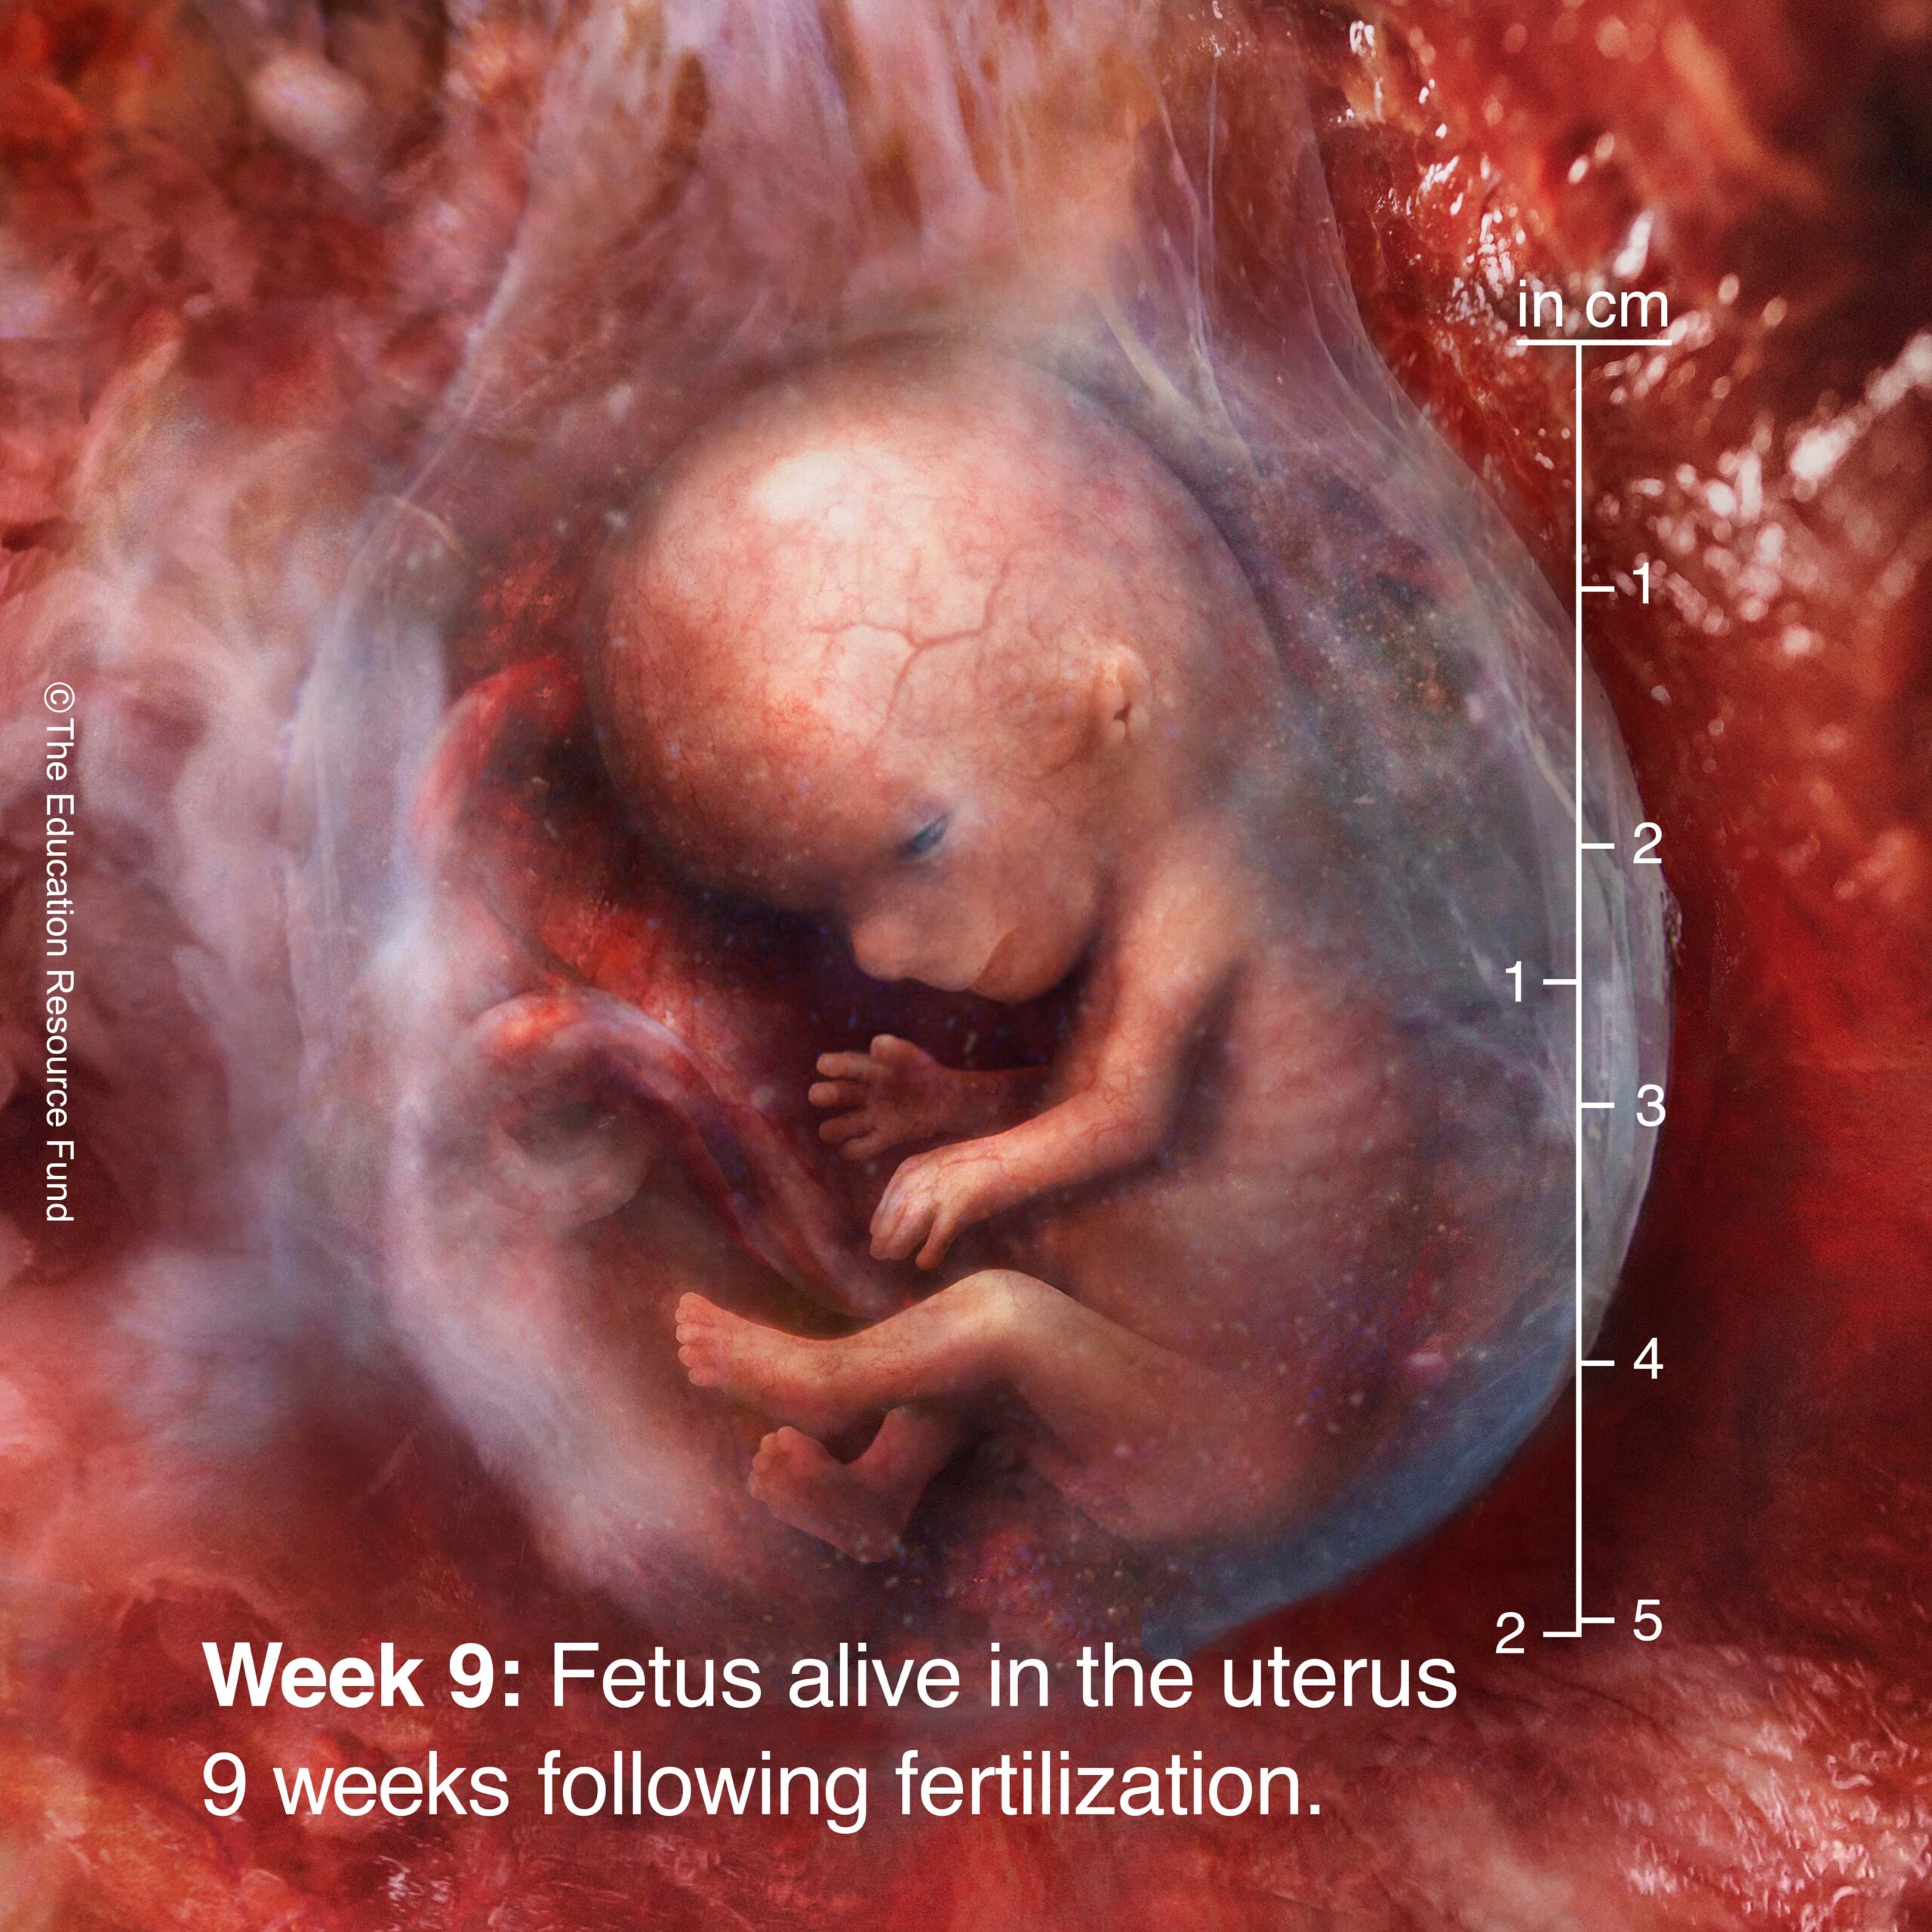 Week 9: Embryo alive in the uterus 9 weeks following fertilization